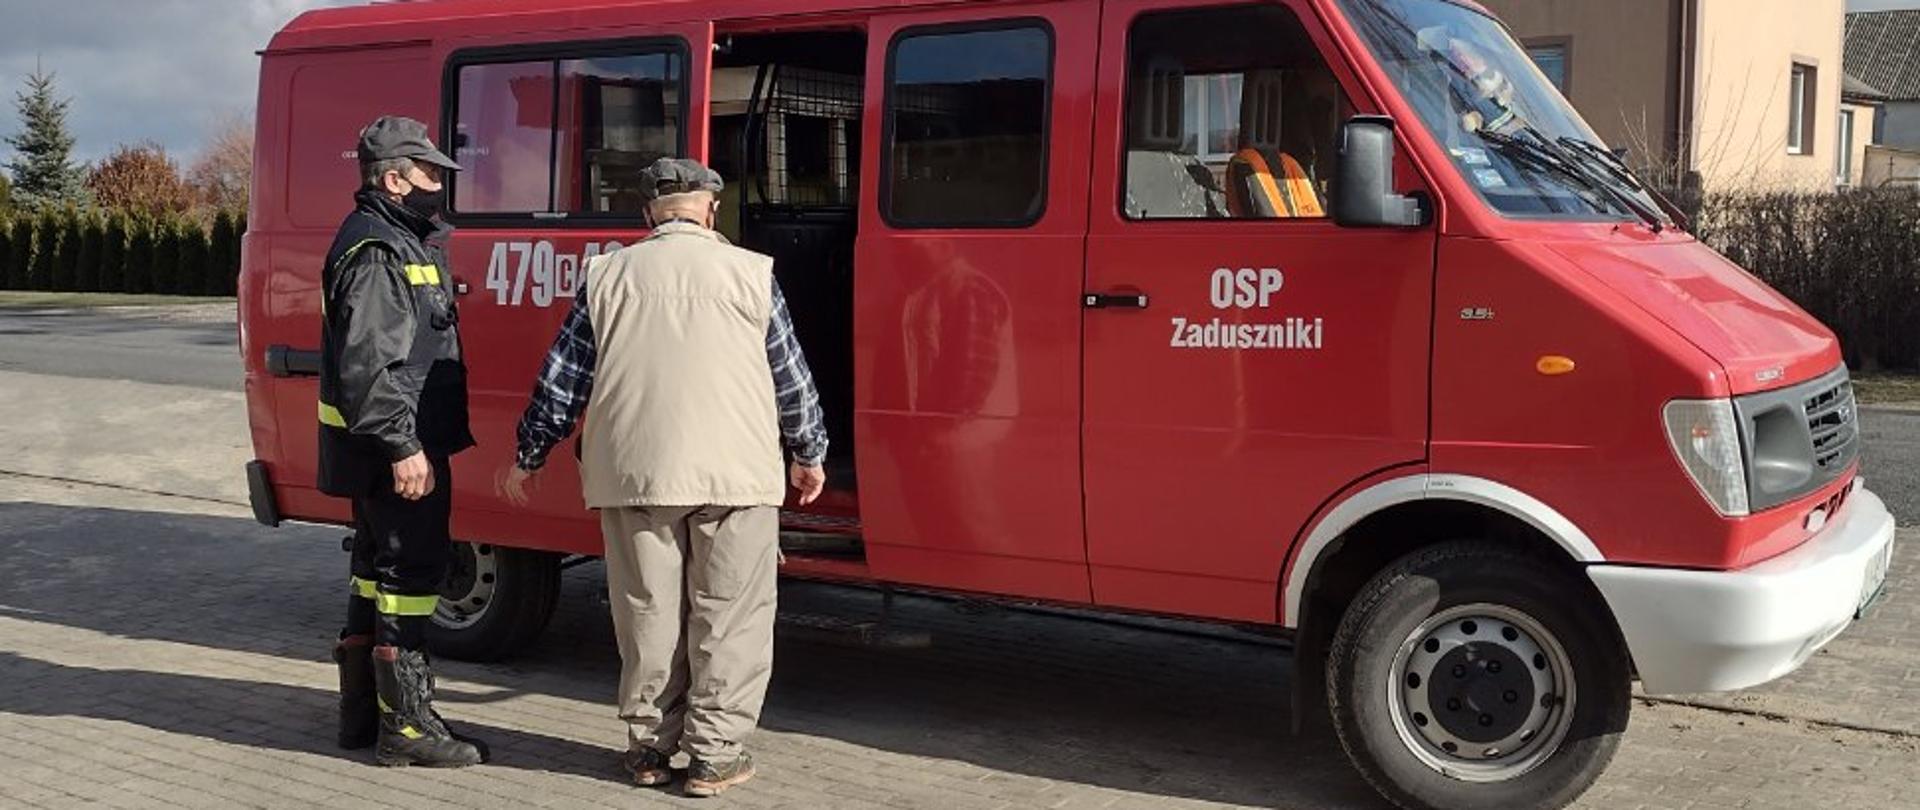 Strażacy z powiatu lipnowskiego wspierają Narodowy Program Szczepień #SzczepimySię 